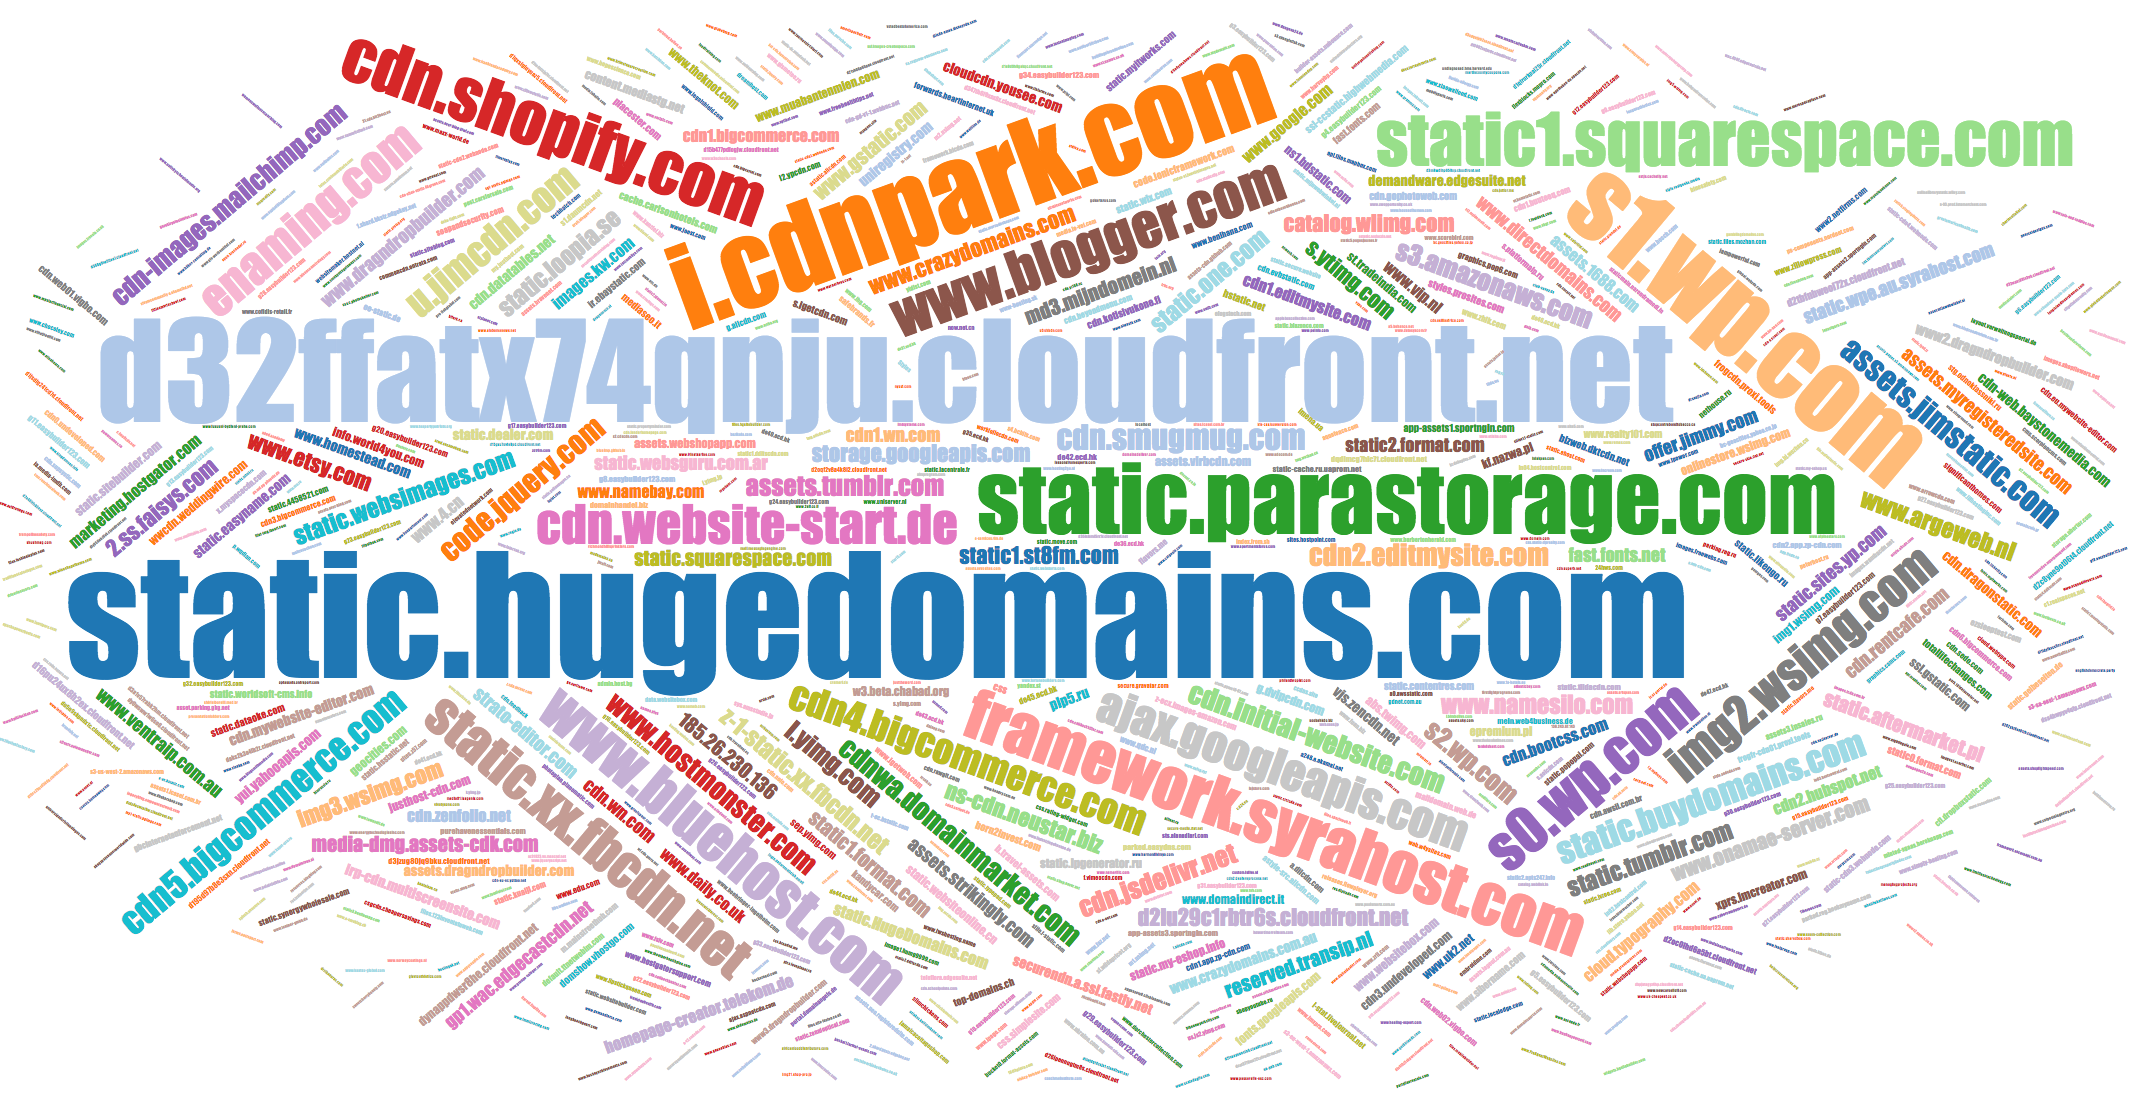 Popular names of CSS domains cdnjs.cloudflare.com, cdn.website-start.de, etc.